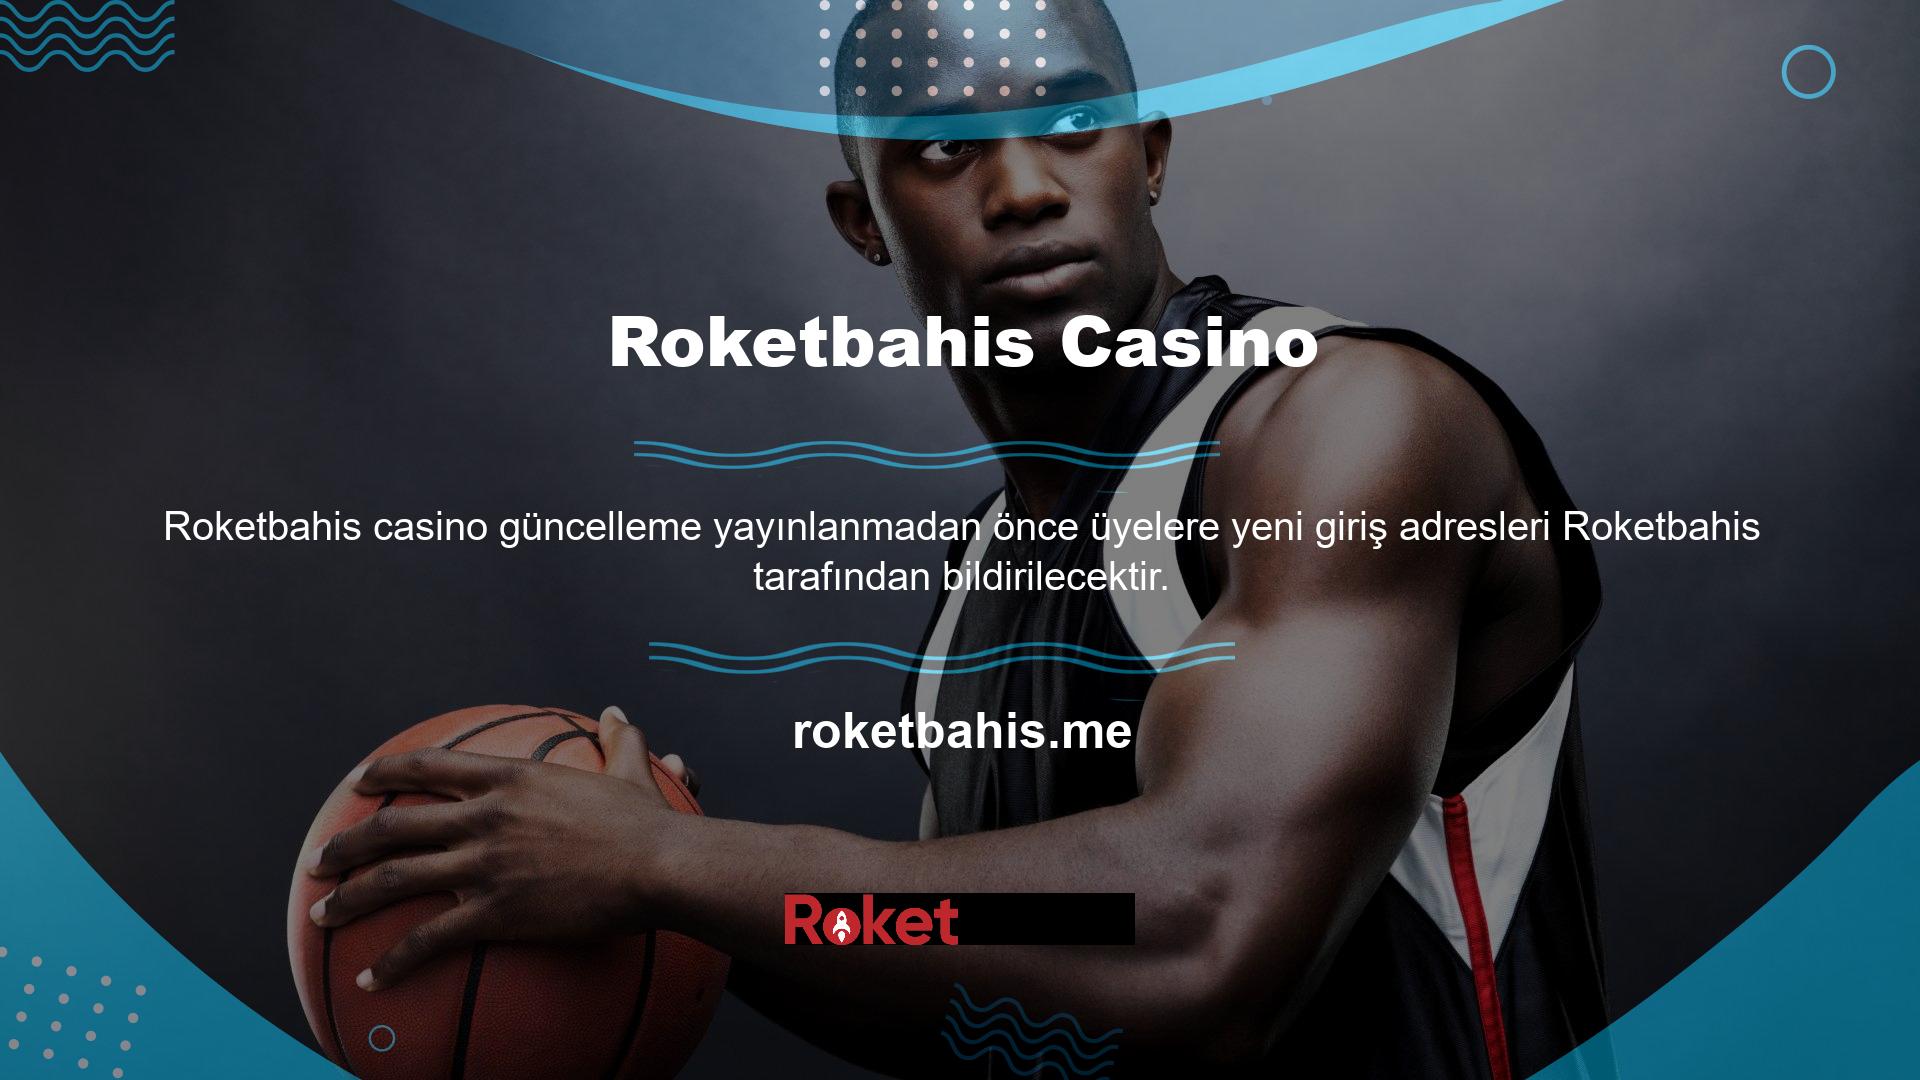 Çoğu casino sitesinde olduğu gibi, Roketbahis de yasal olarak kayıtlı değildir ve bu nedenle adresinin düzenli olarak güncellenmesi gerekmektedir